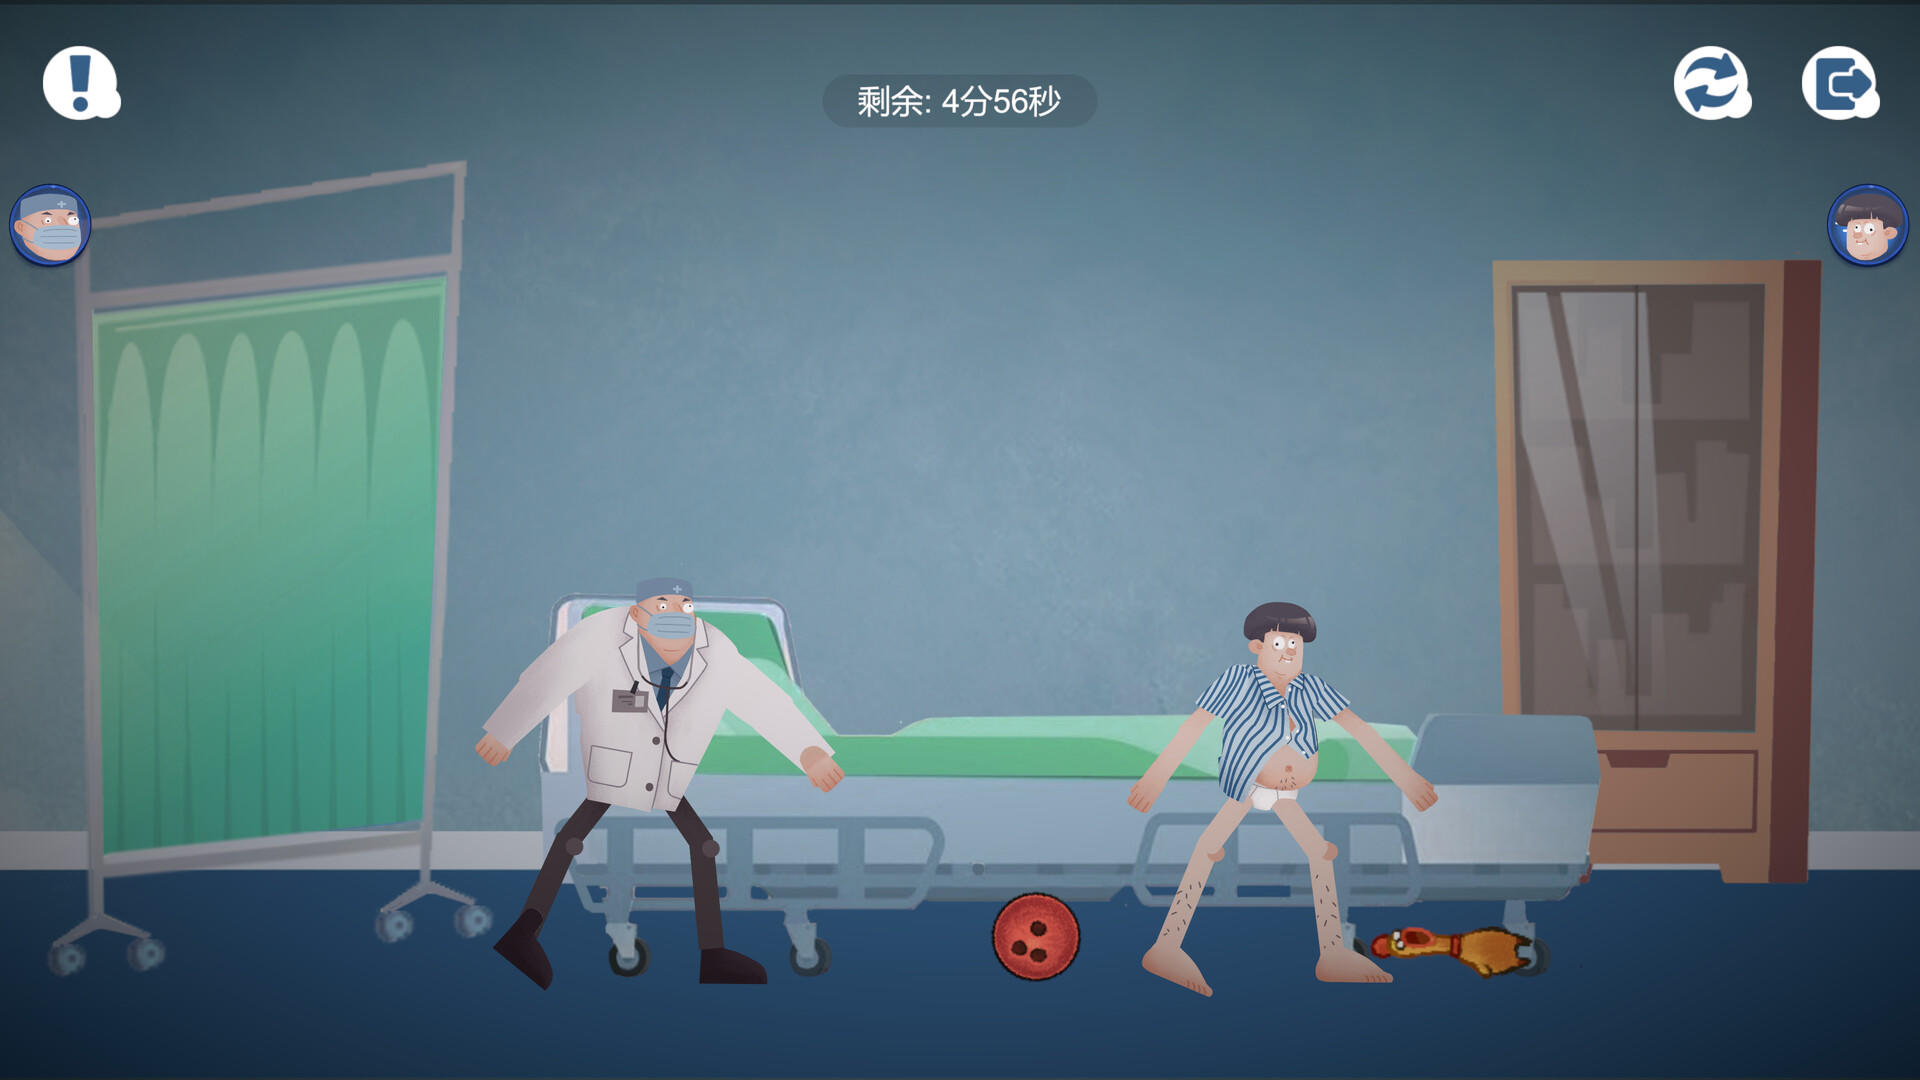 我要出院 leaving the hospital screenshot game